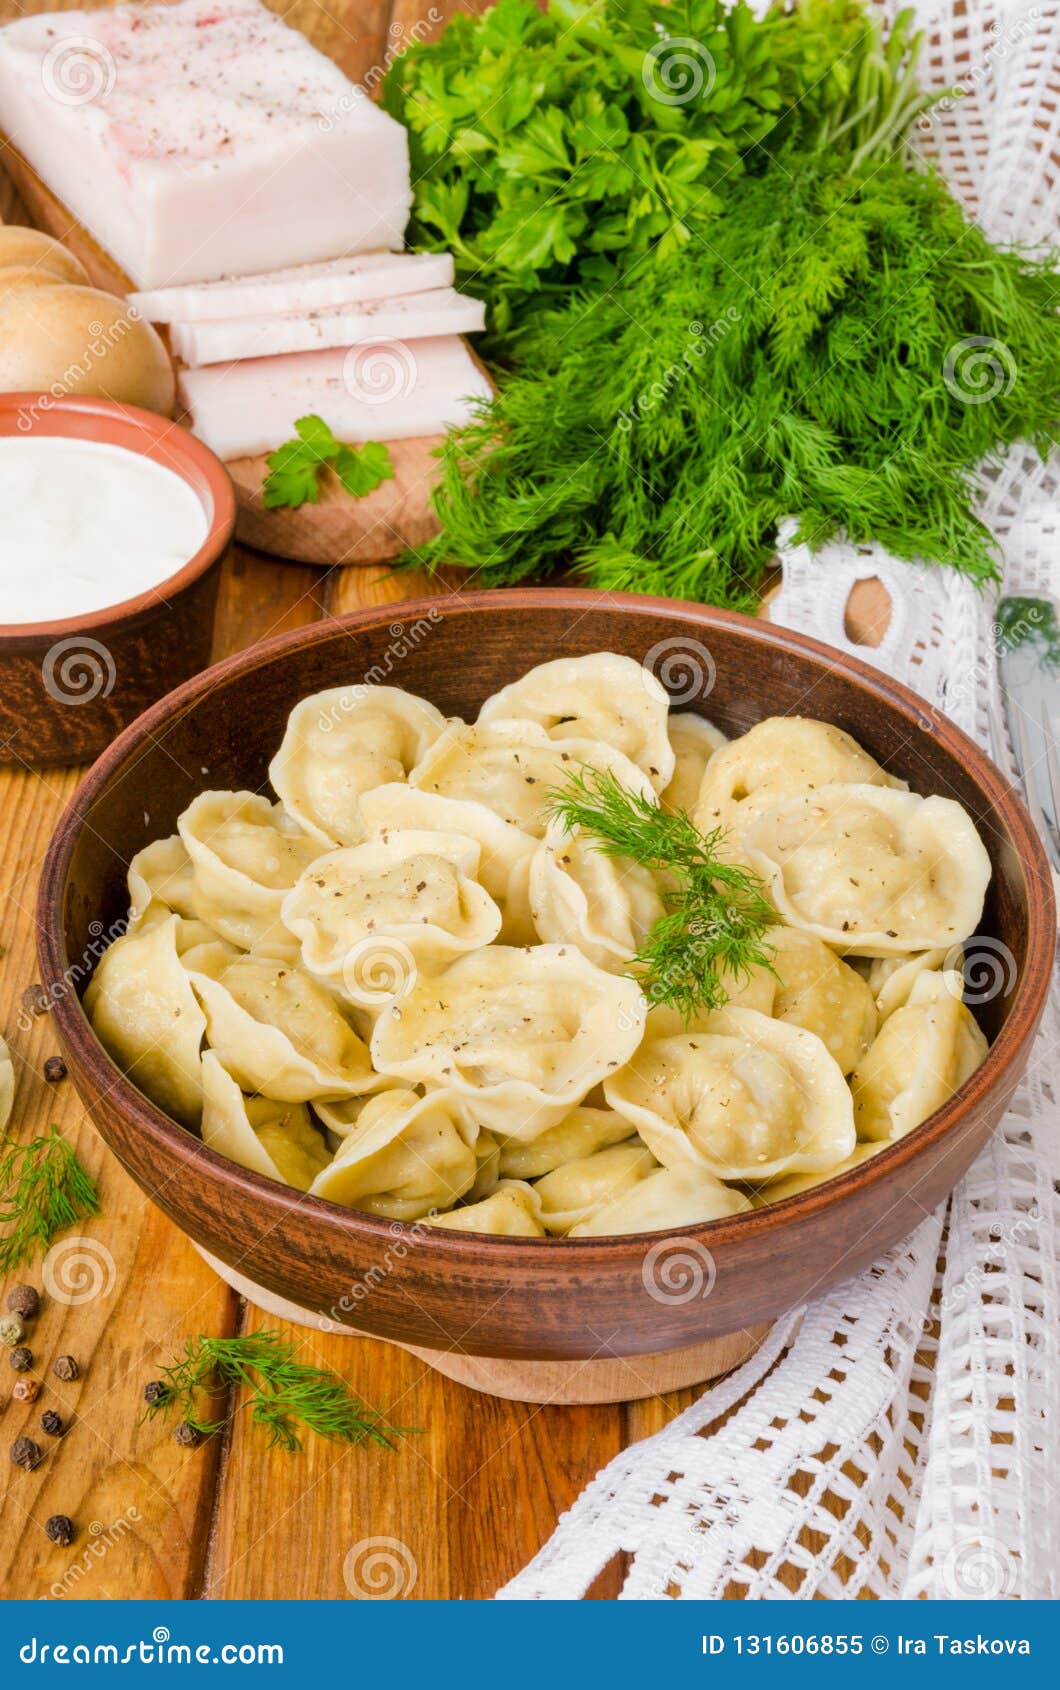 Homemade Meat Dumplings - Russian Pelmeni. Stock Image - Image of onion ...